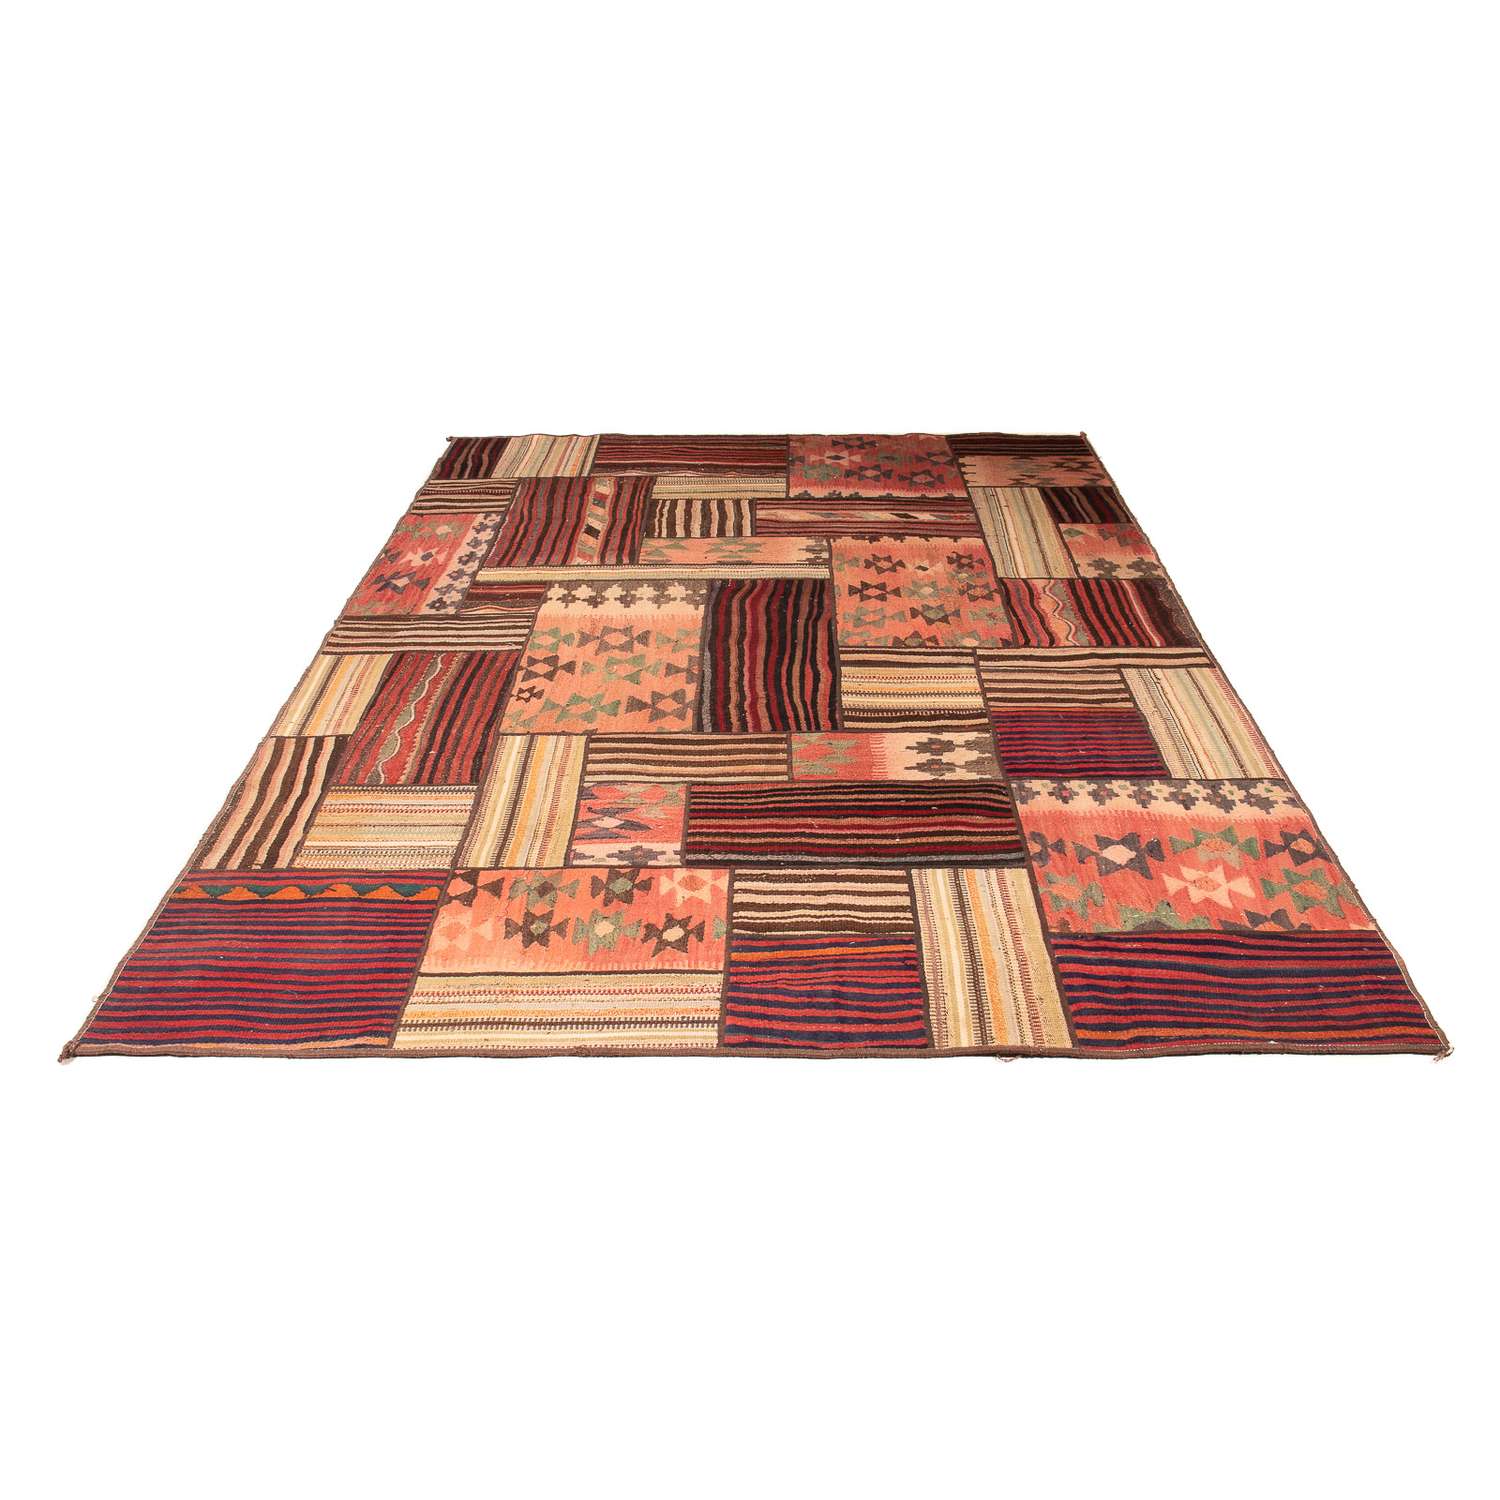 Dywan patchworkowy - 300 x 200 cm - wielokolorowy